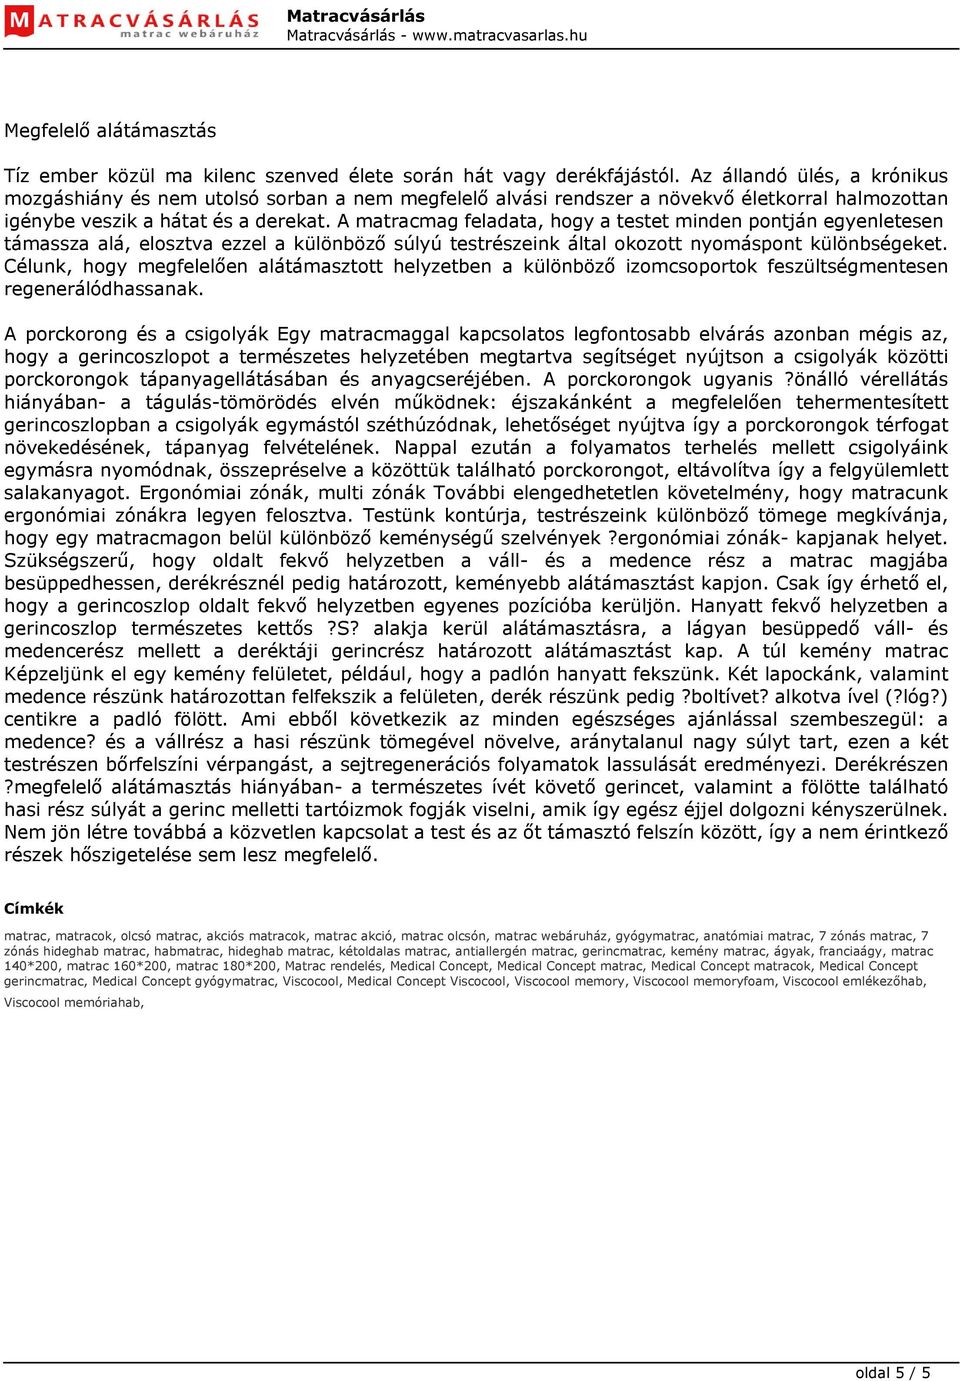 Medical Concept LUXUS memory matrac - PDF Ingyenes letöltés